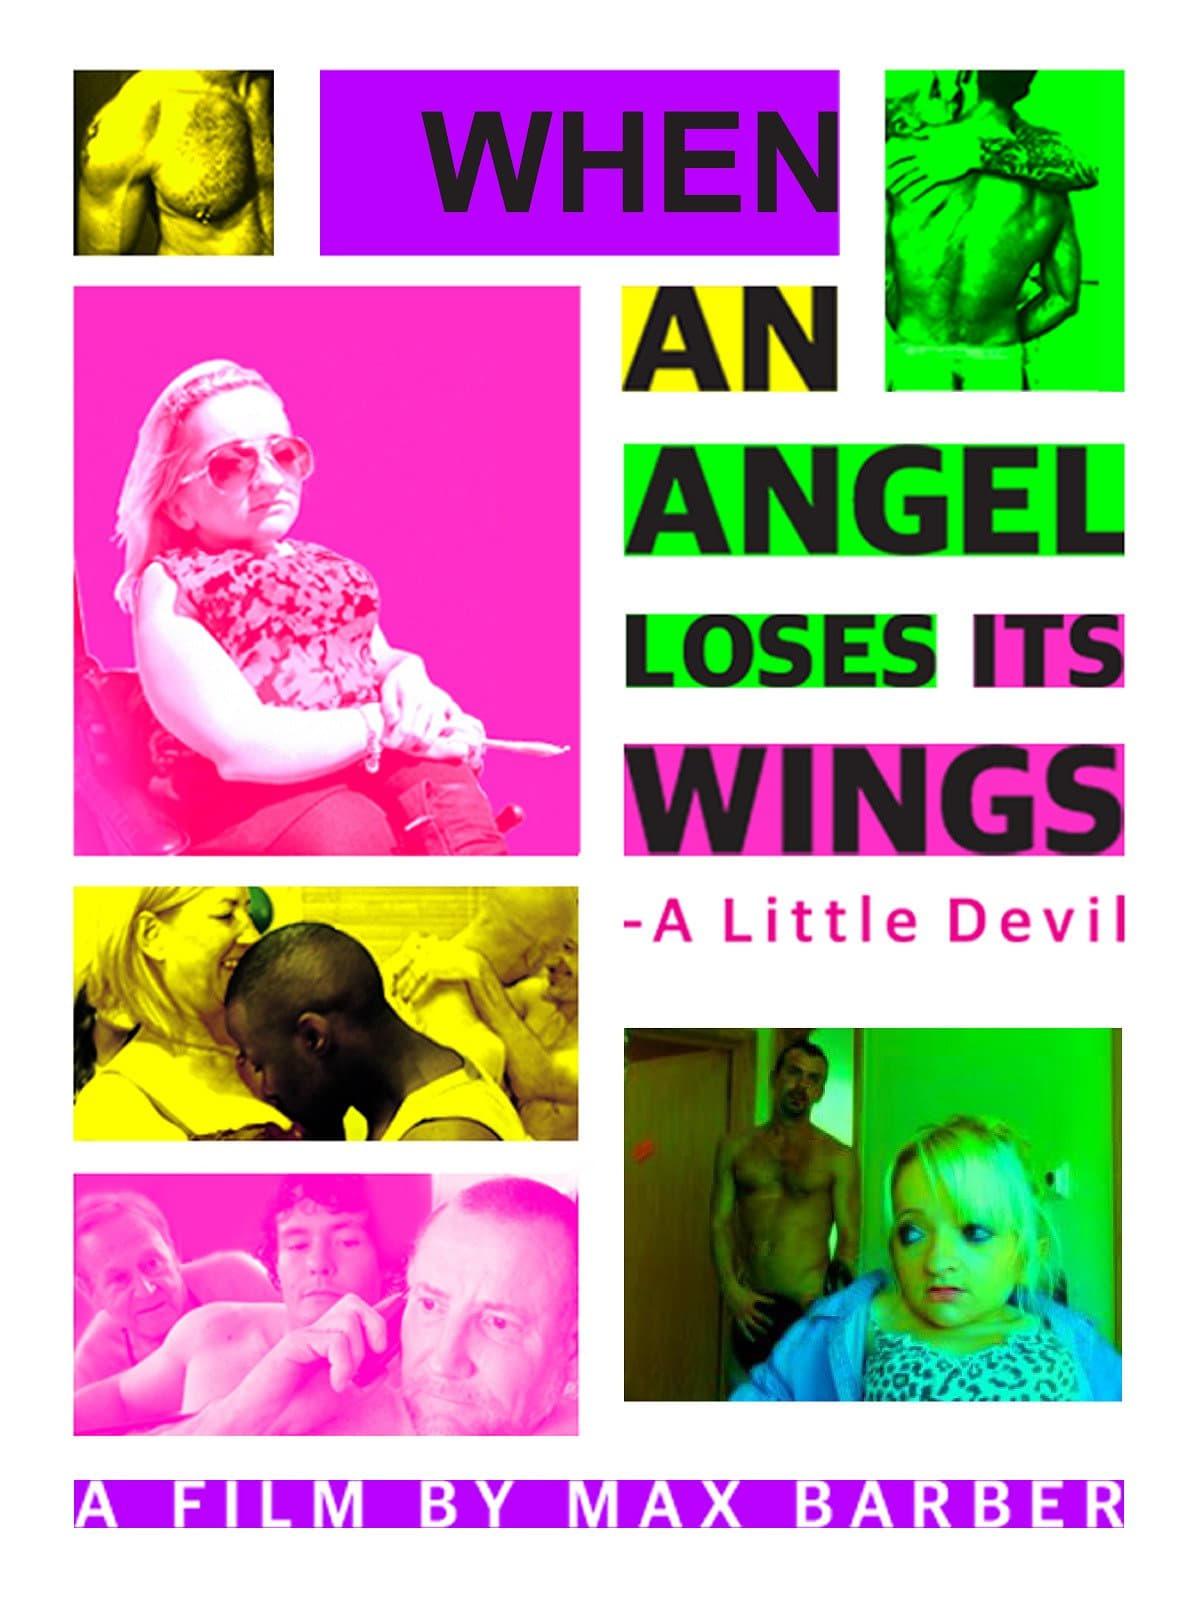 Little Devil poster